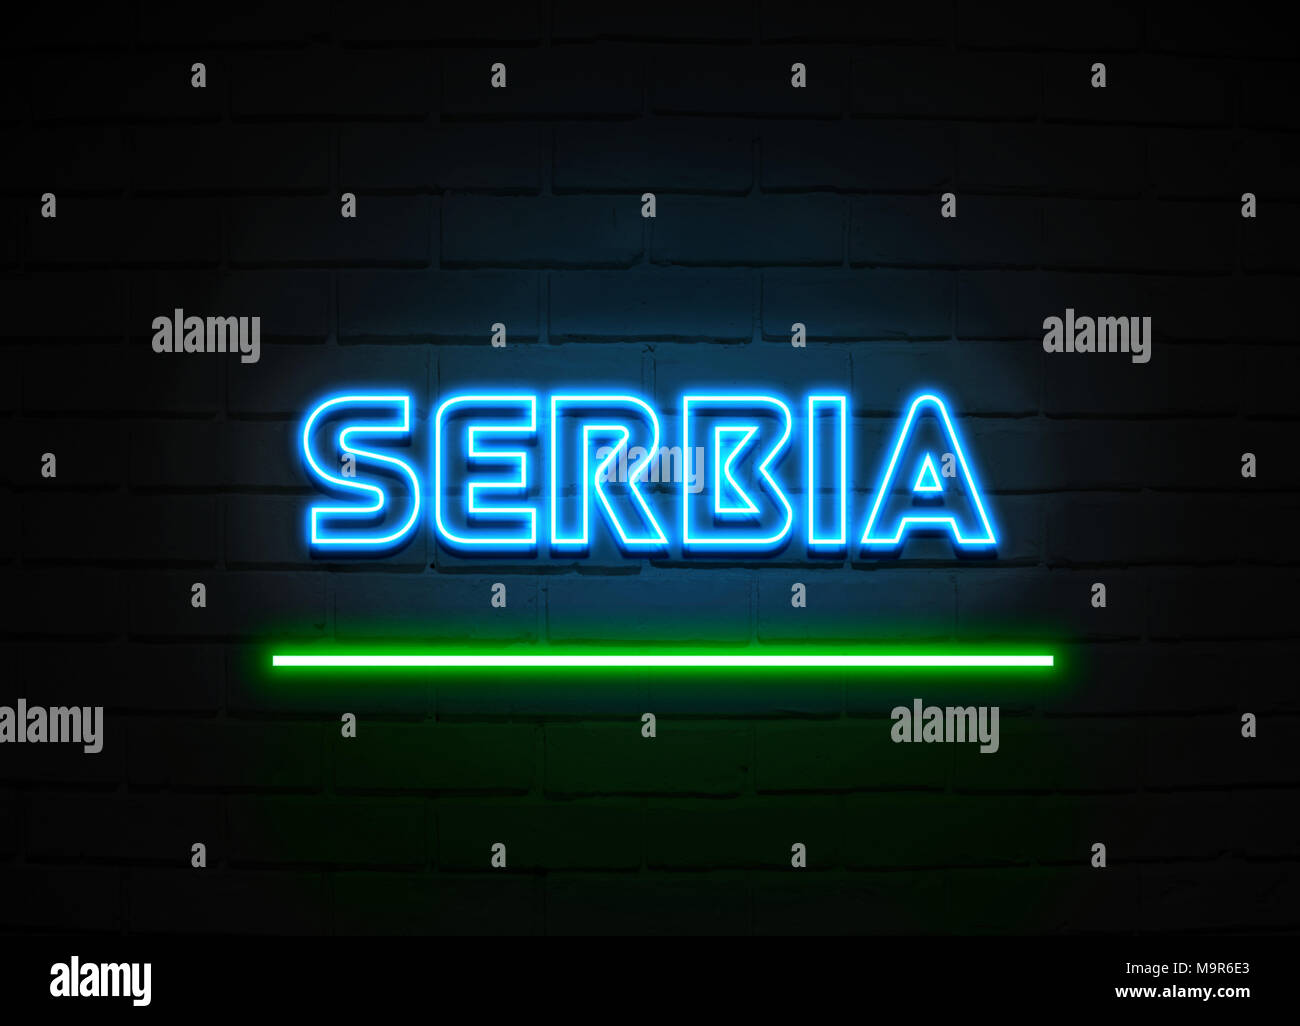 Serbien Leuchtreklame - glühende Leuchtreklame auf brickwall Wand - 3D-Royalty Free Stock Illustration dargestellt. Stockfoto